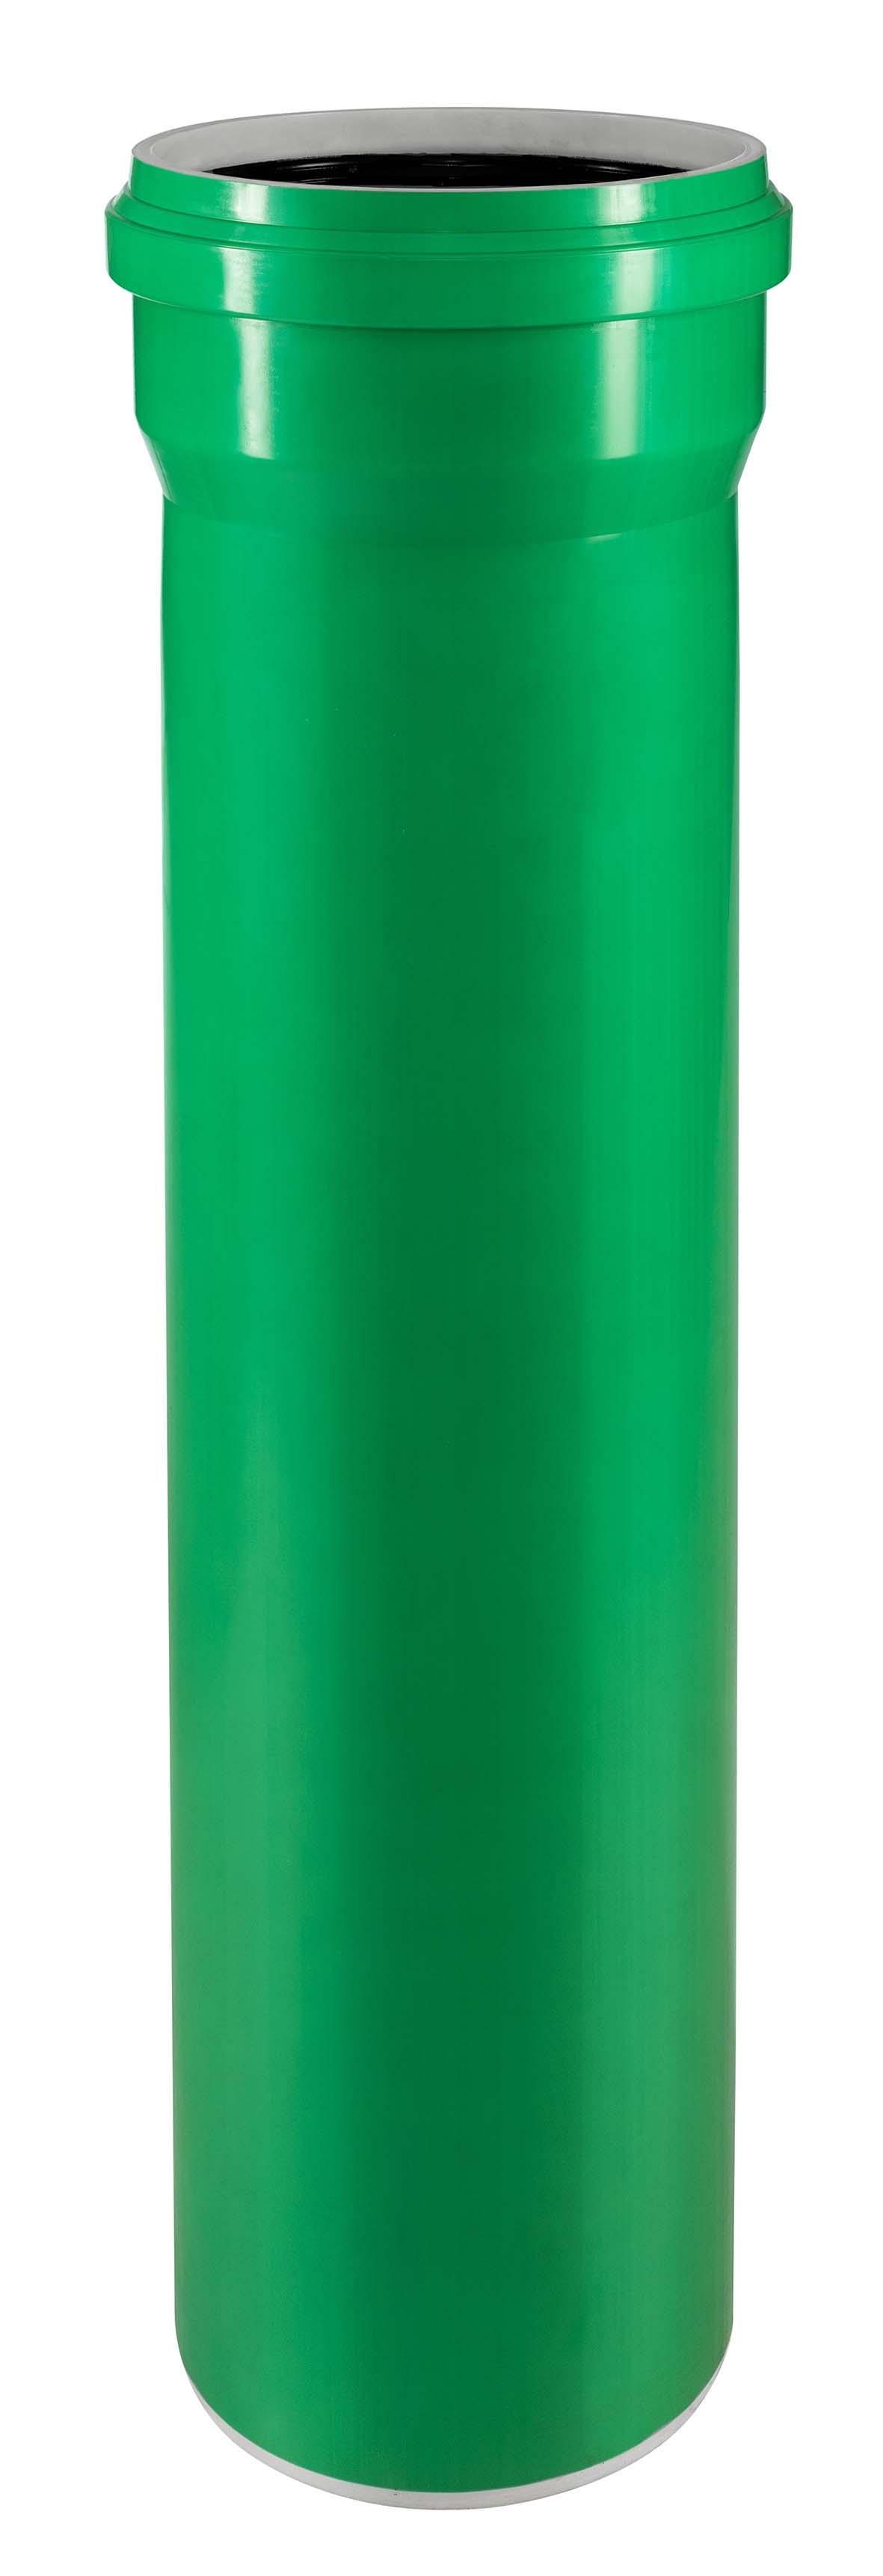 KG-2000 EM SN 16 Rohr (grün) DN/OD 110 Länge 1 m